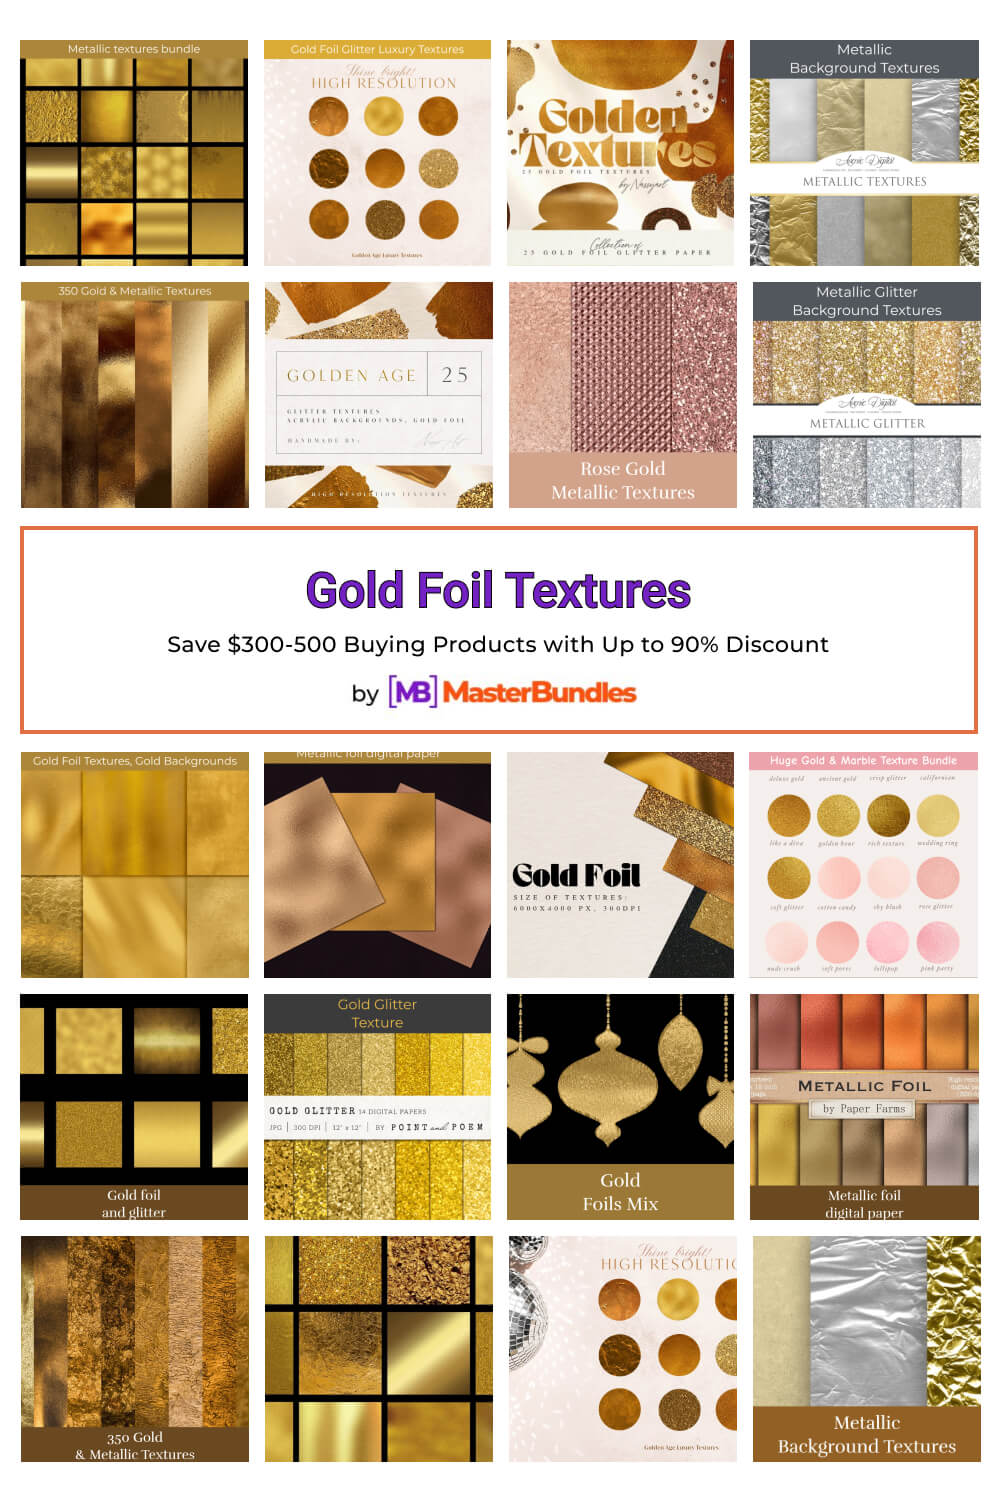 gold foil textures pinterest image.